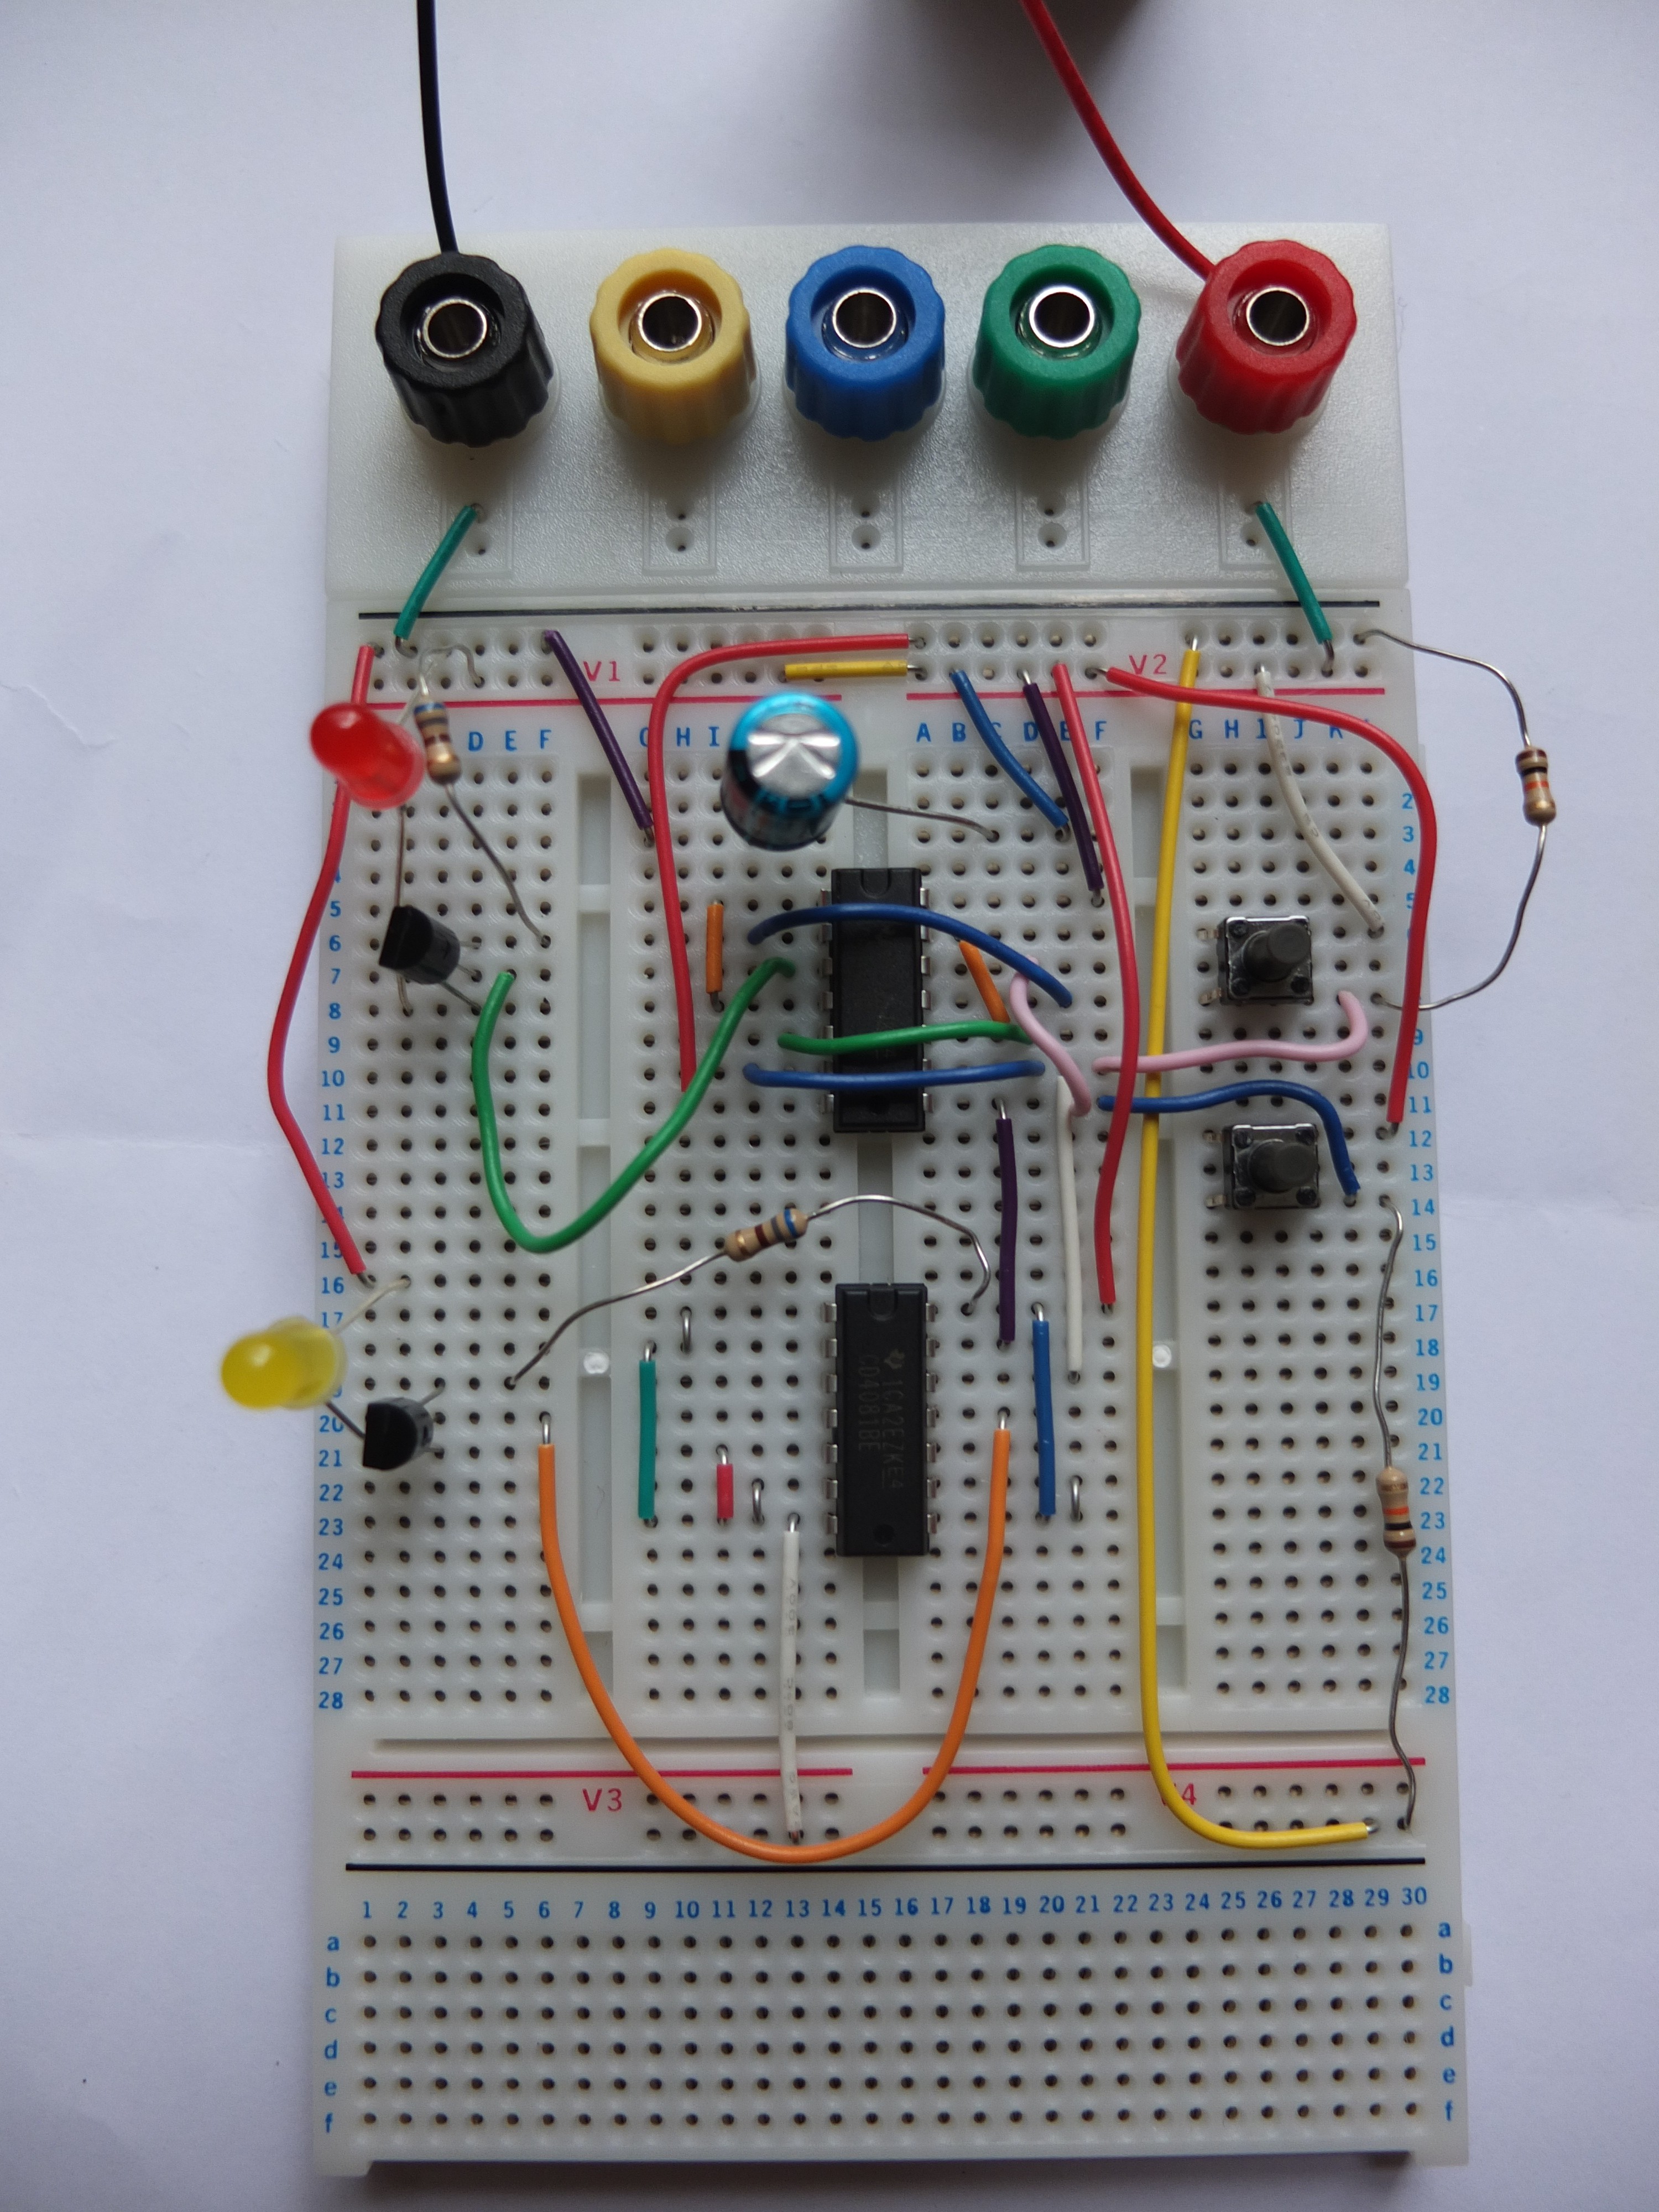 Half Adder Simplest puter Bb Halfadder wiring lights diagram circuit design software draw the Schematic